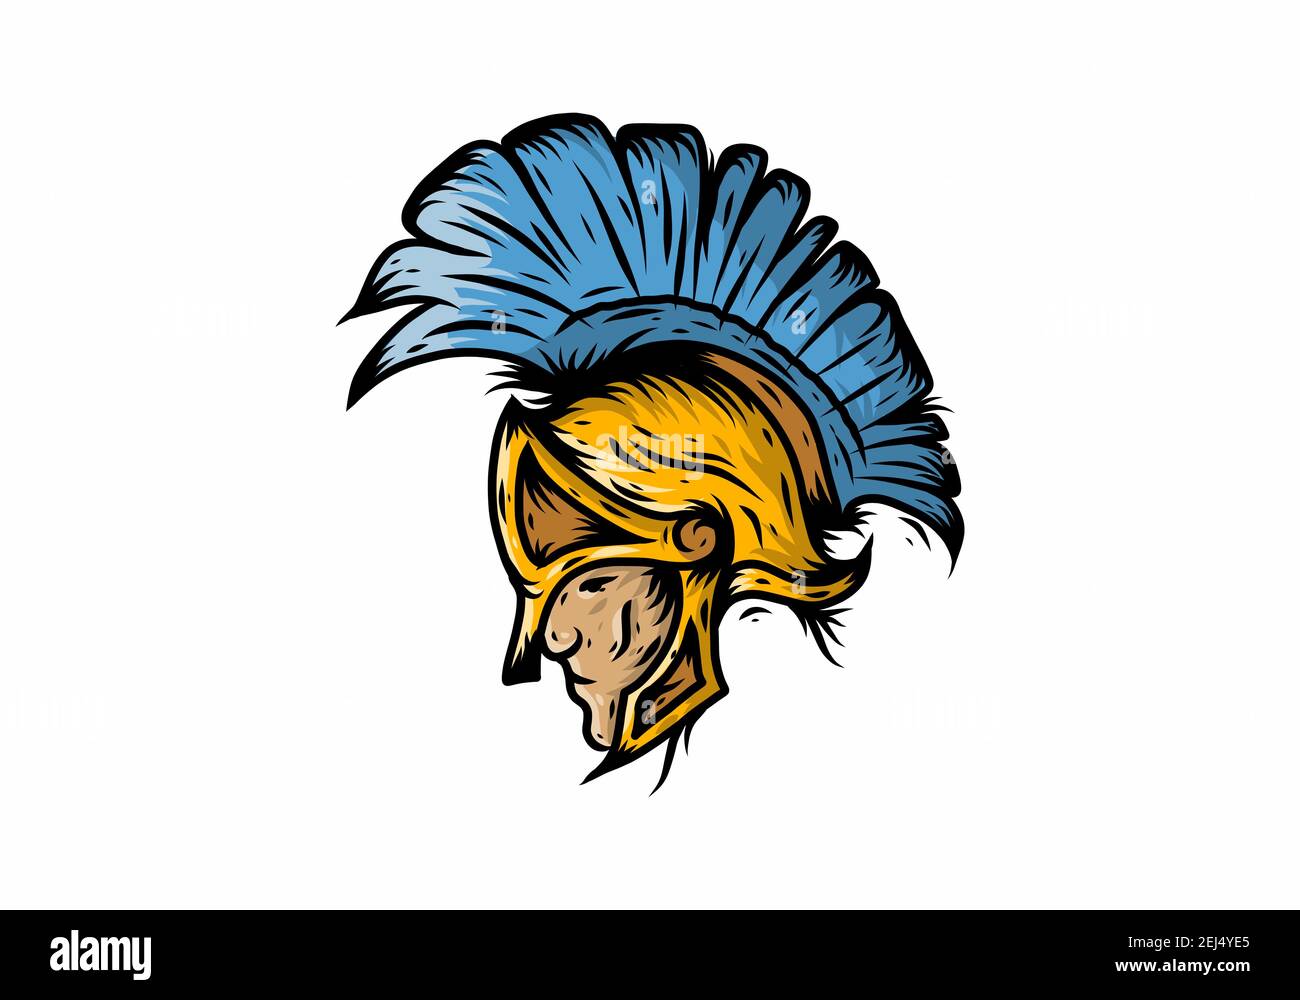 Dessin d'illustration de la tête des guerriers spartiates en or bleu Illustration de Vecteur